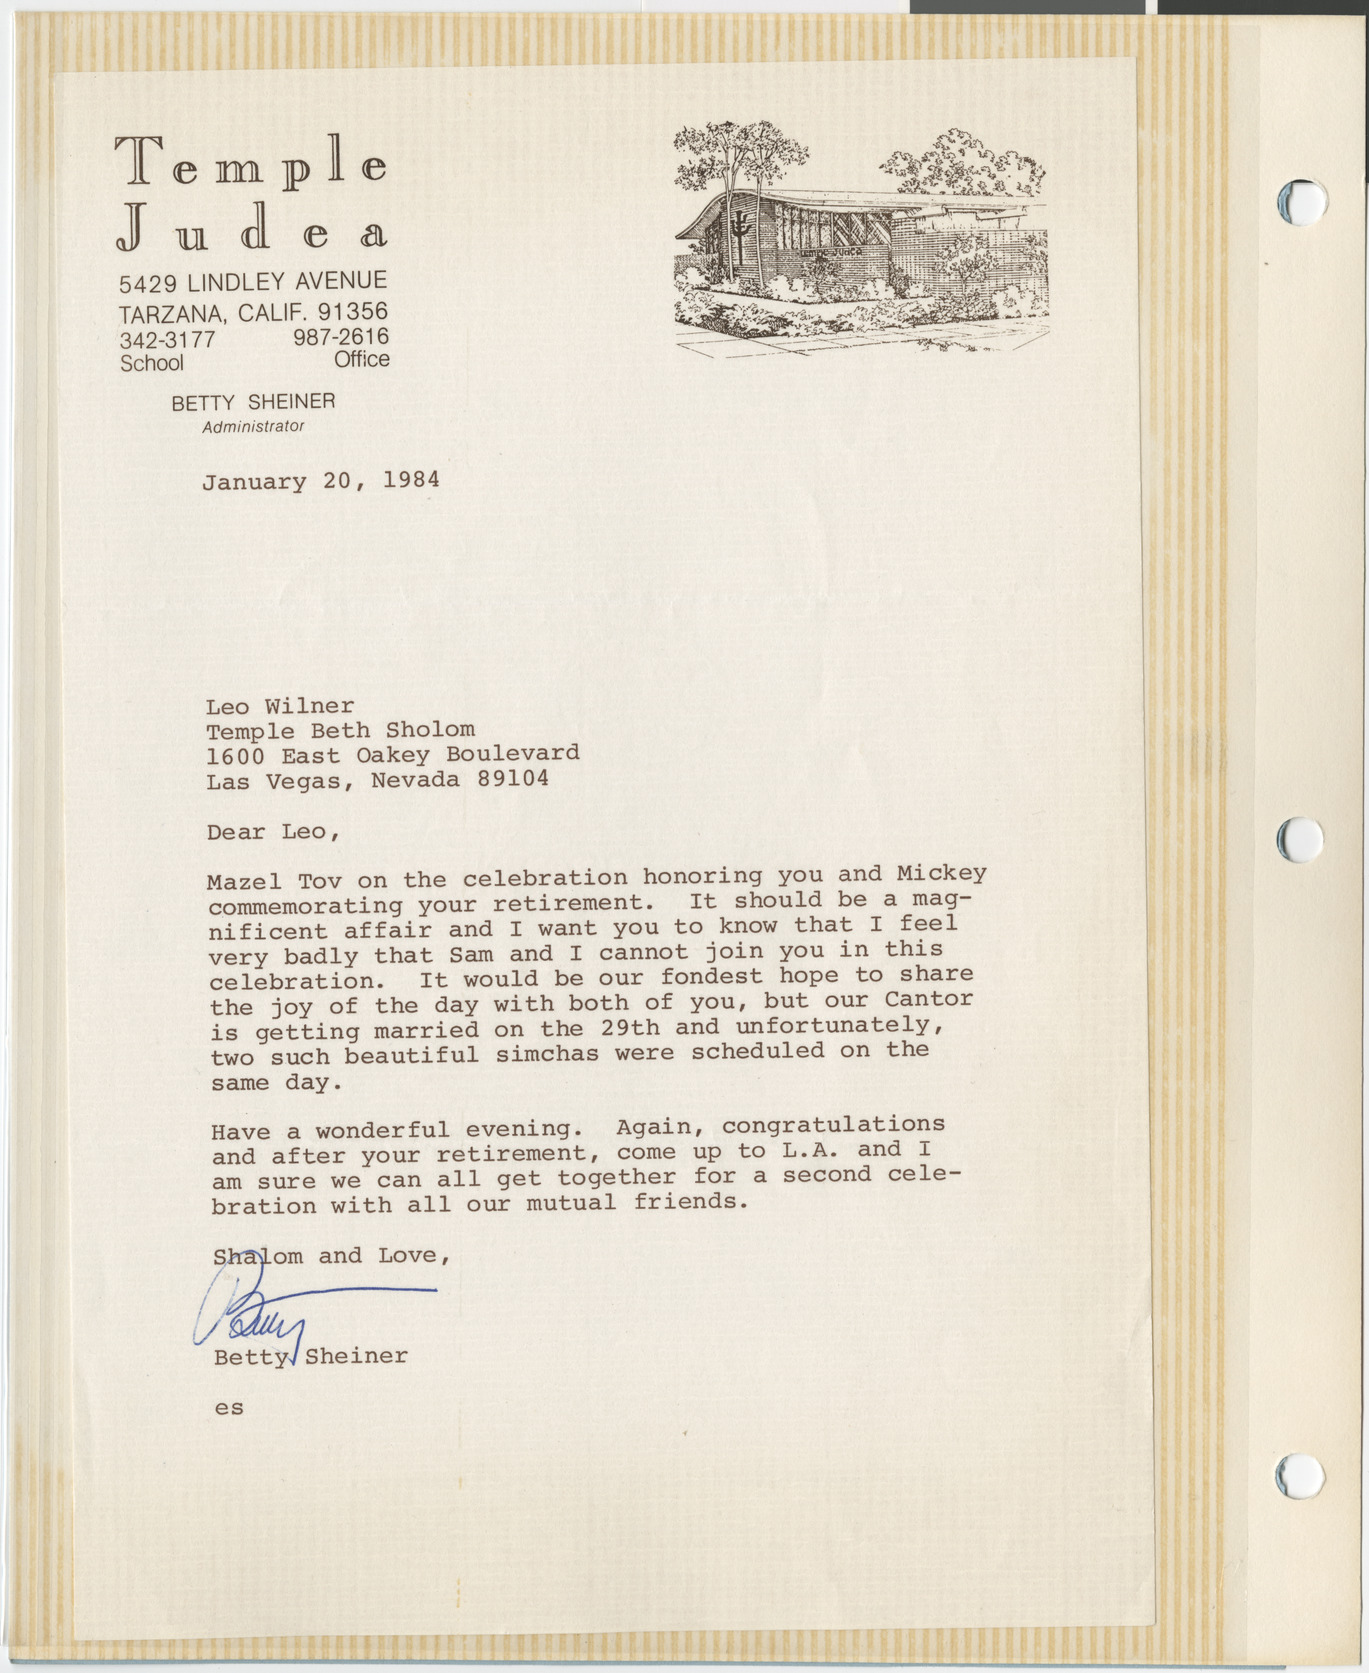 Letter from Betty Sheiner (Temple Judea, Tarzana, Calif.) to Leo Wilner, January 20, 1984